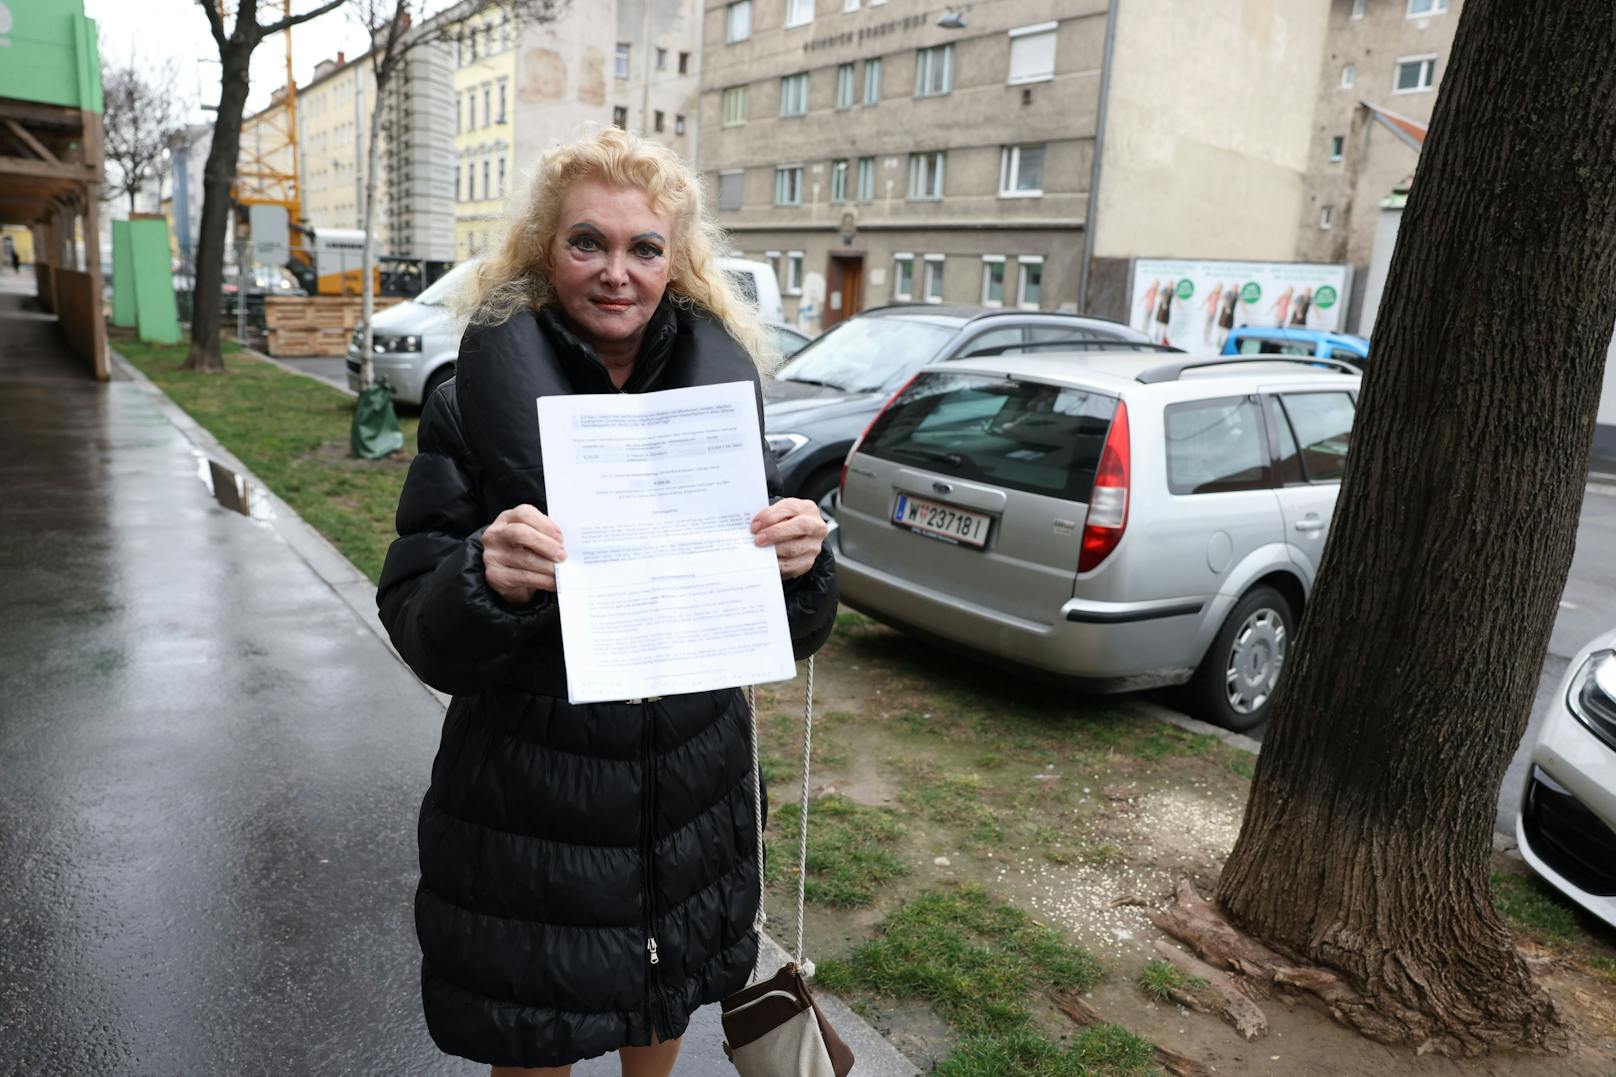 Elisabeth W. (78) aus Wien-Brigittenau wurde beim Taubenfüttern in flagranti ertappt. Nun soll sie 200 Euro Strafen zahlen!